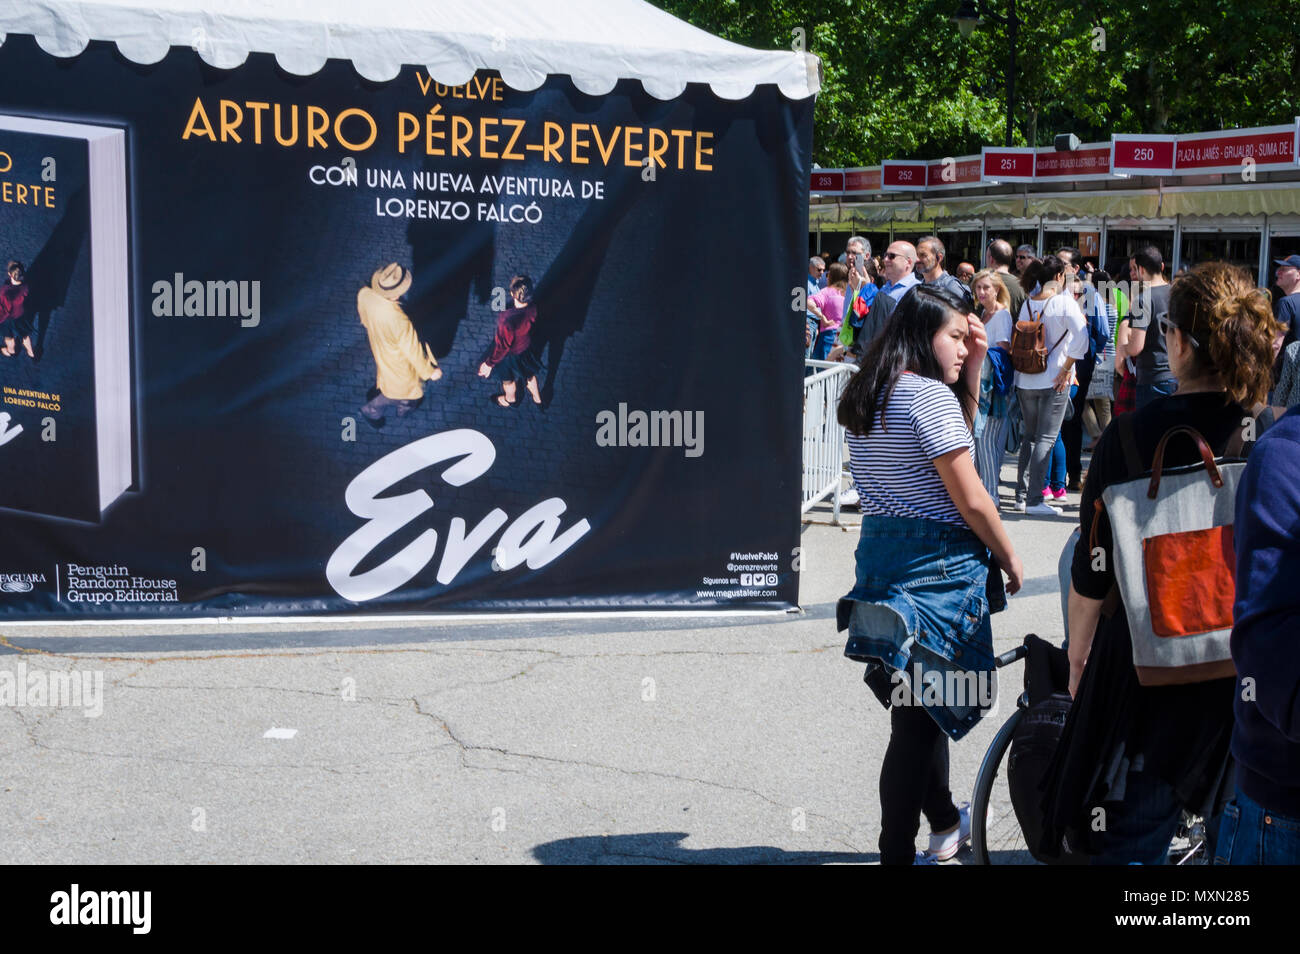 La vista de la gente en la Feria del Libro 2018, Madrid, España Foto de stock